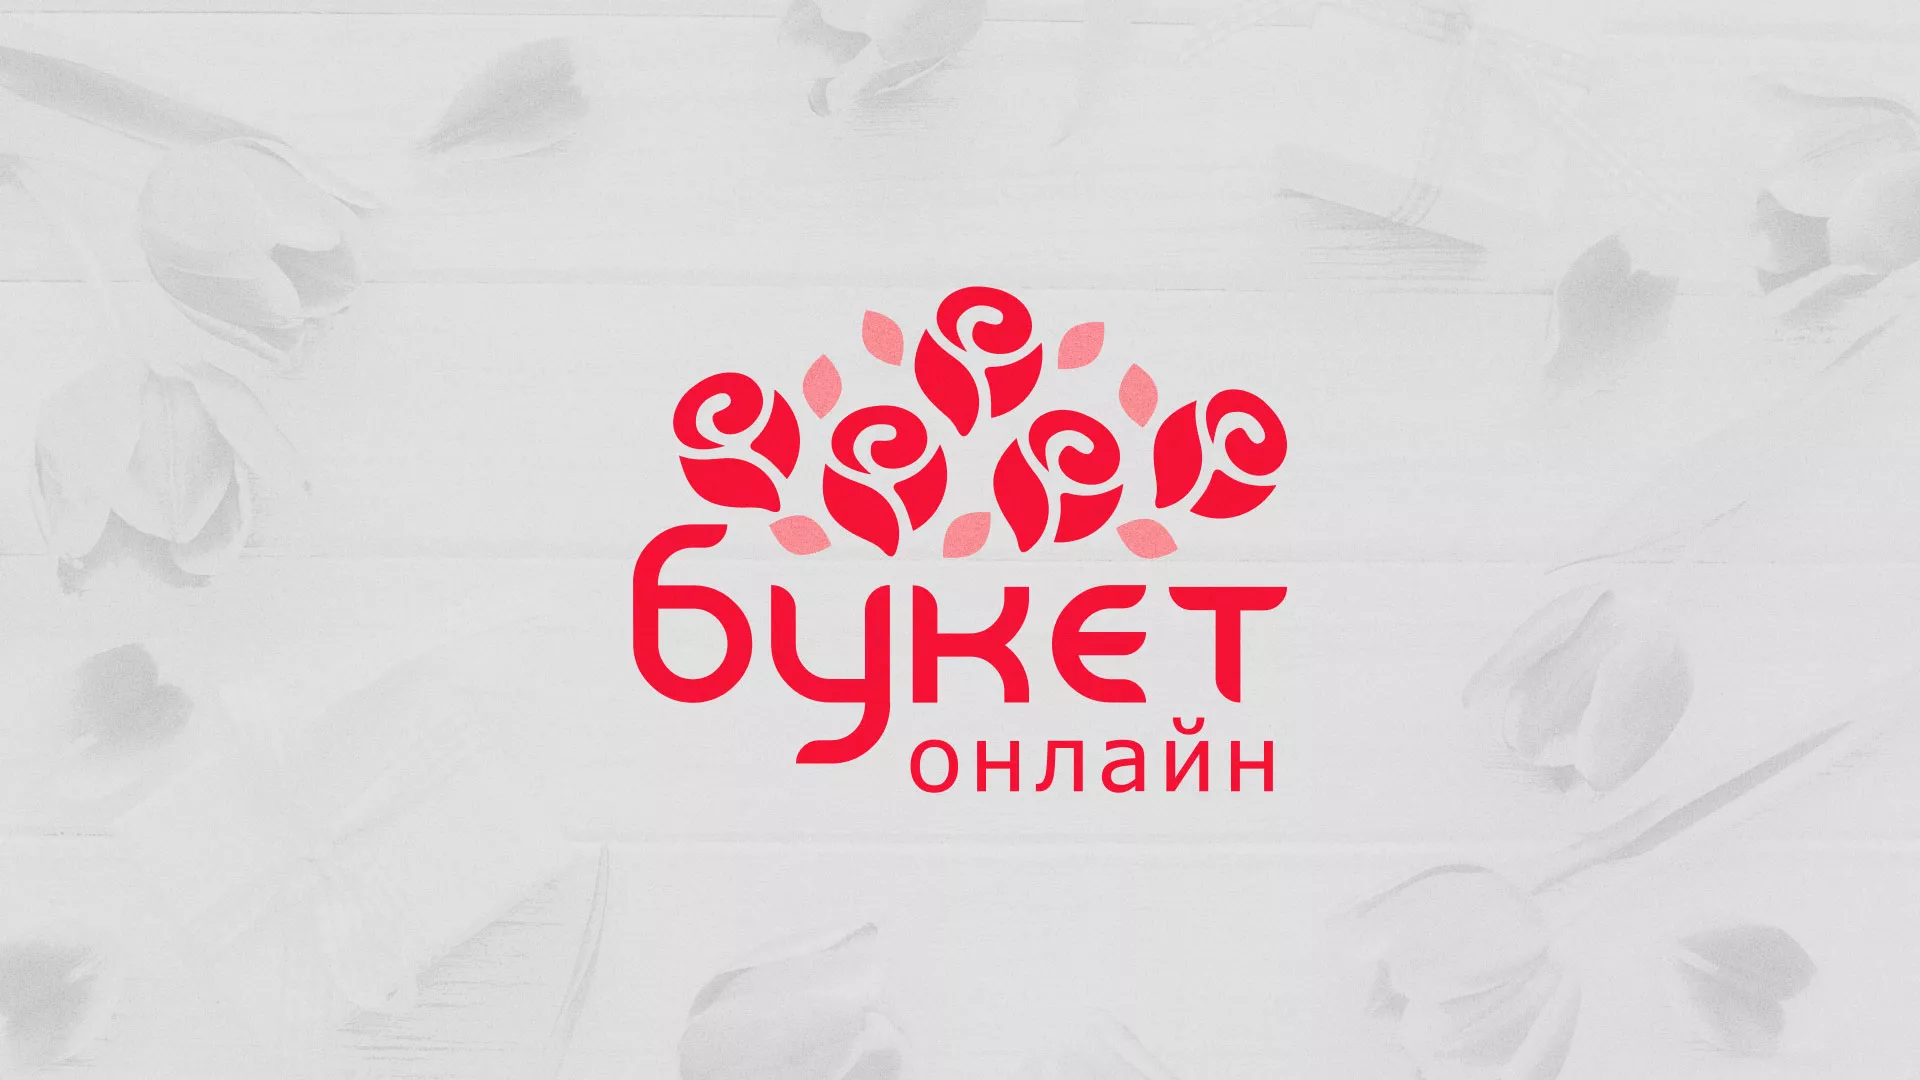 Создание интернет-магазина «Букет-онлайн» по цветам в Курильске